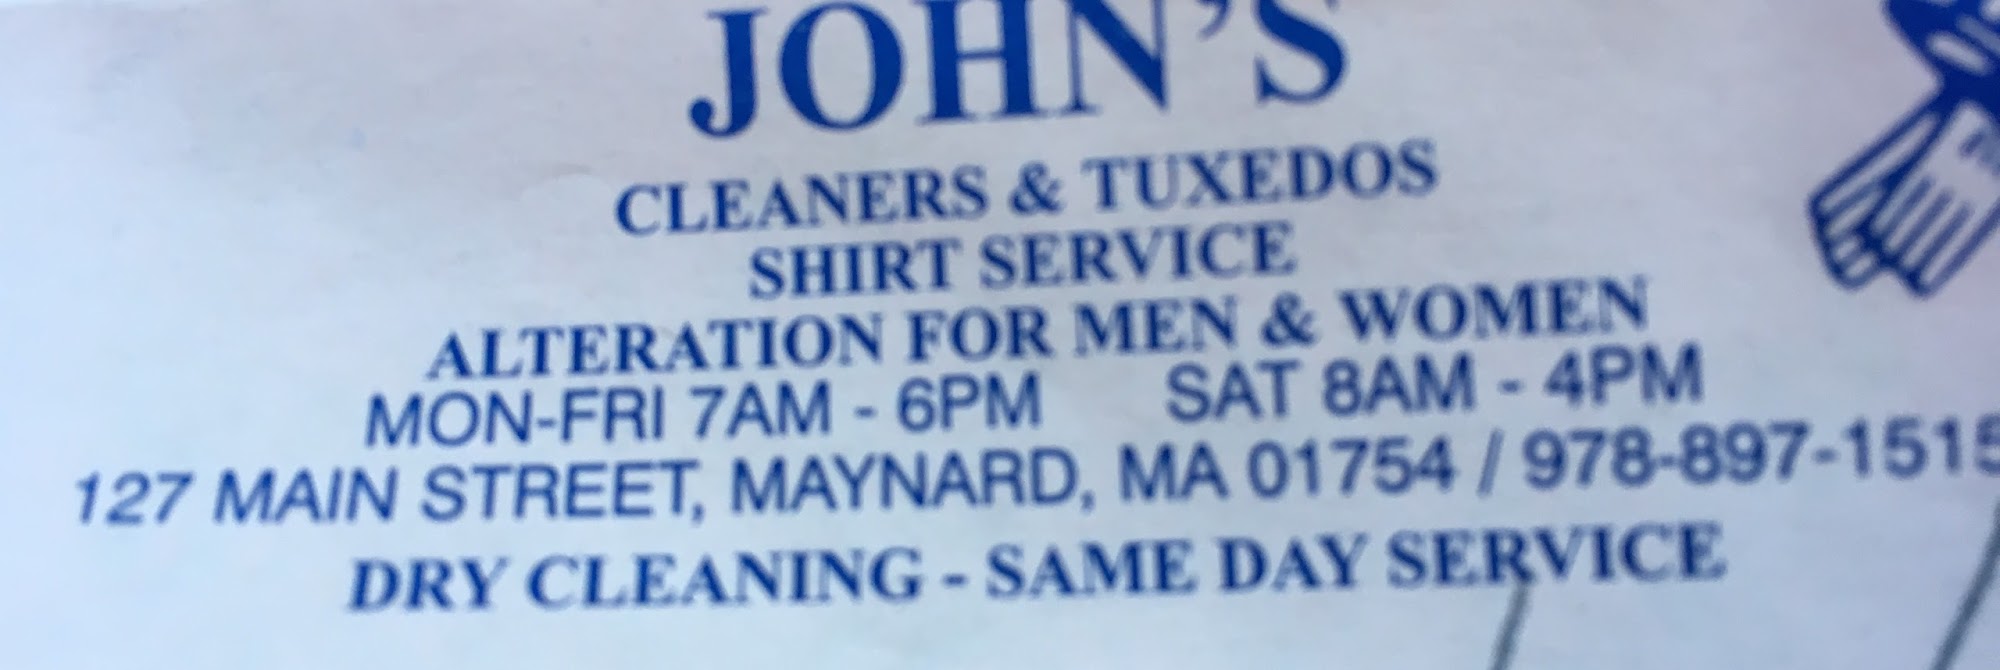 John's Cleaners & Tuxedos